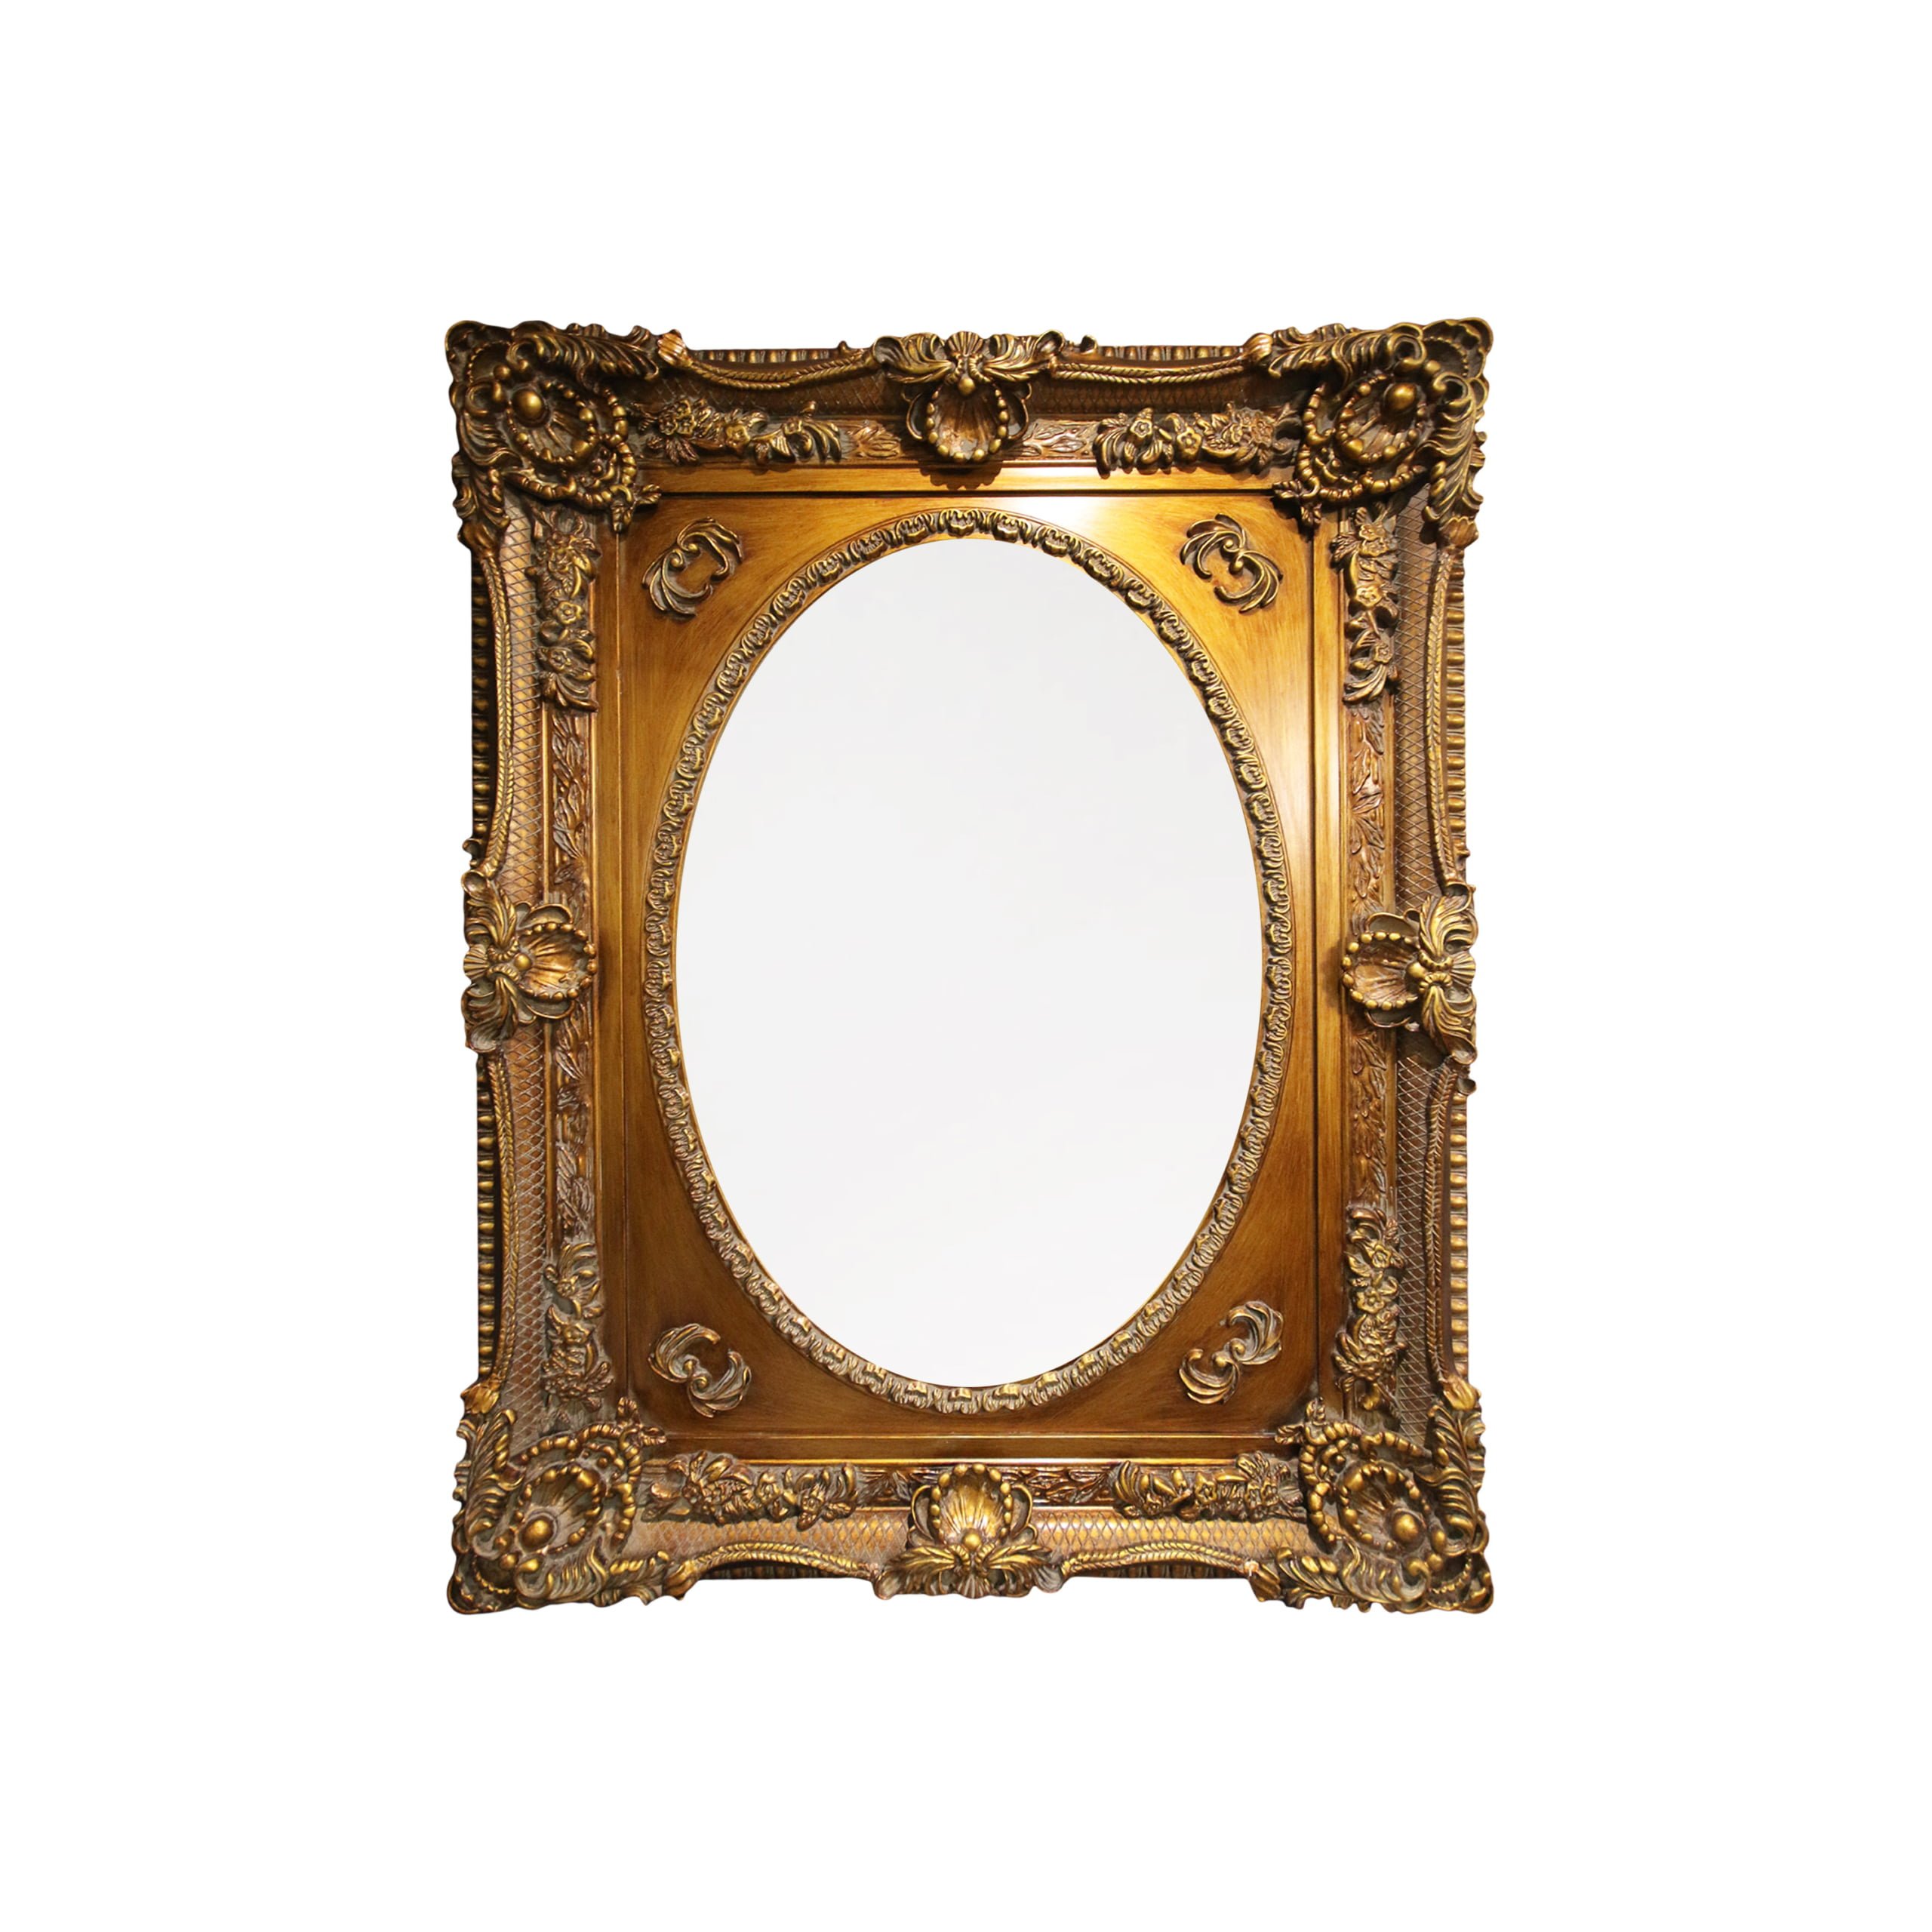 Golden square decorative mirror